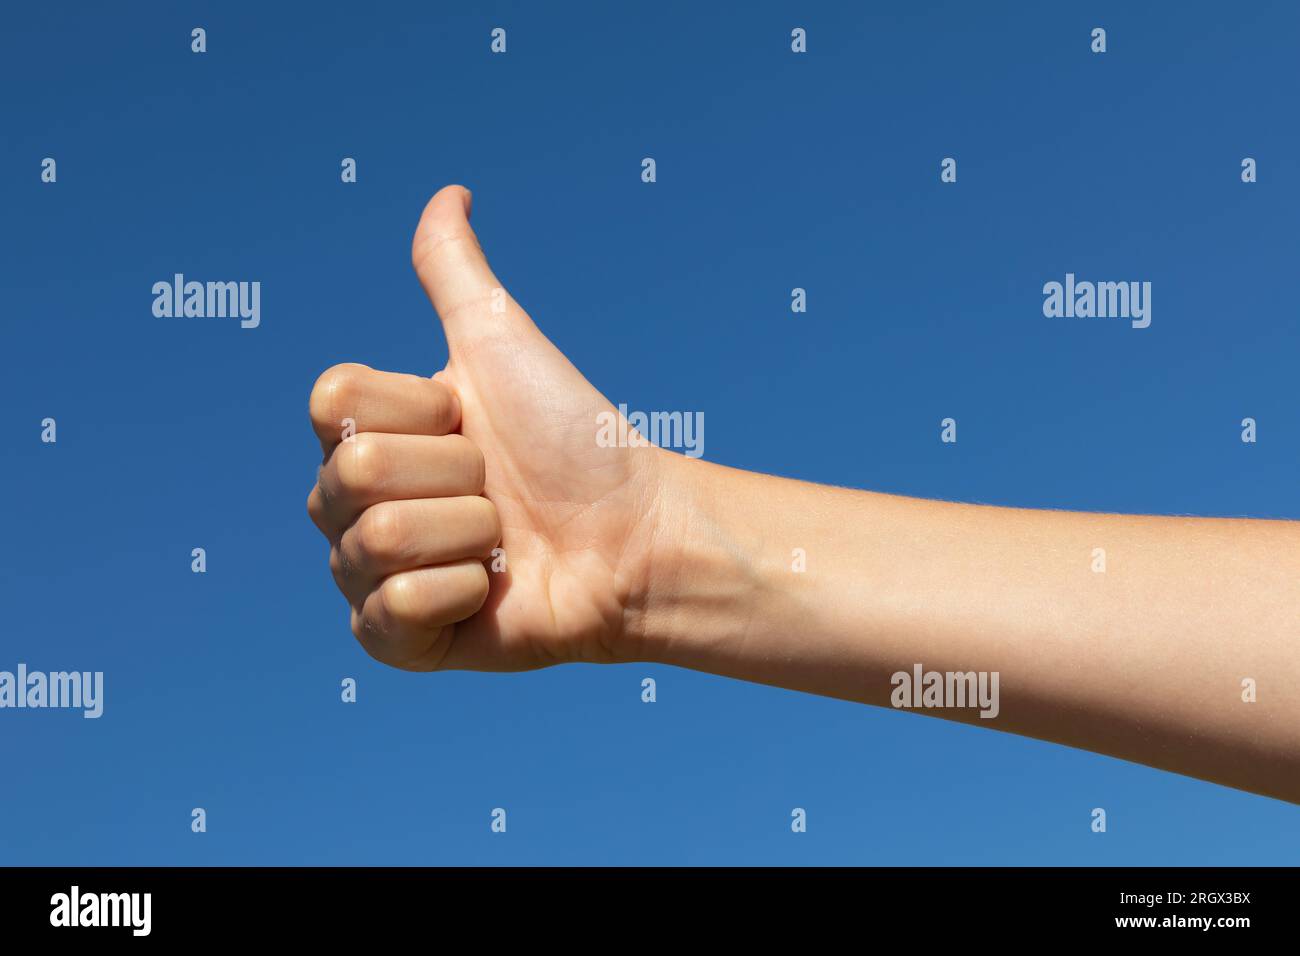 Il bambino mostra un gesto con i pollici verso l'alto contro il cielo blu, un concetto sul tema del clima limpido e soleggiato Foto Stock